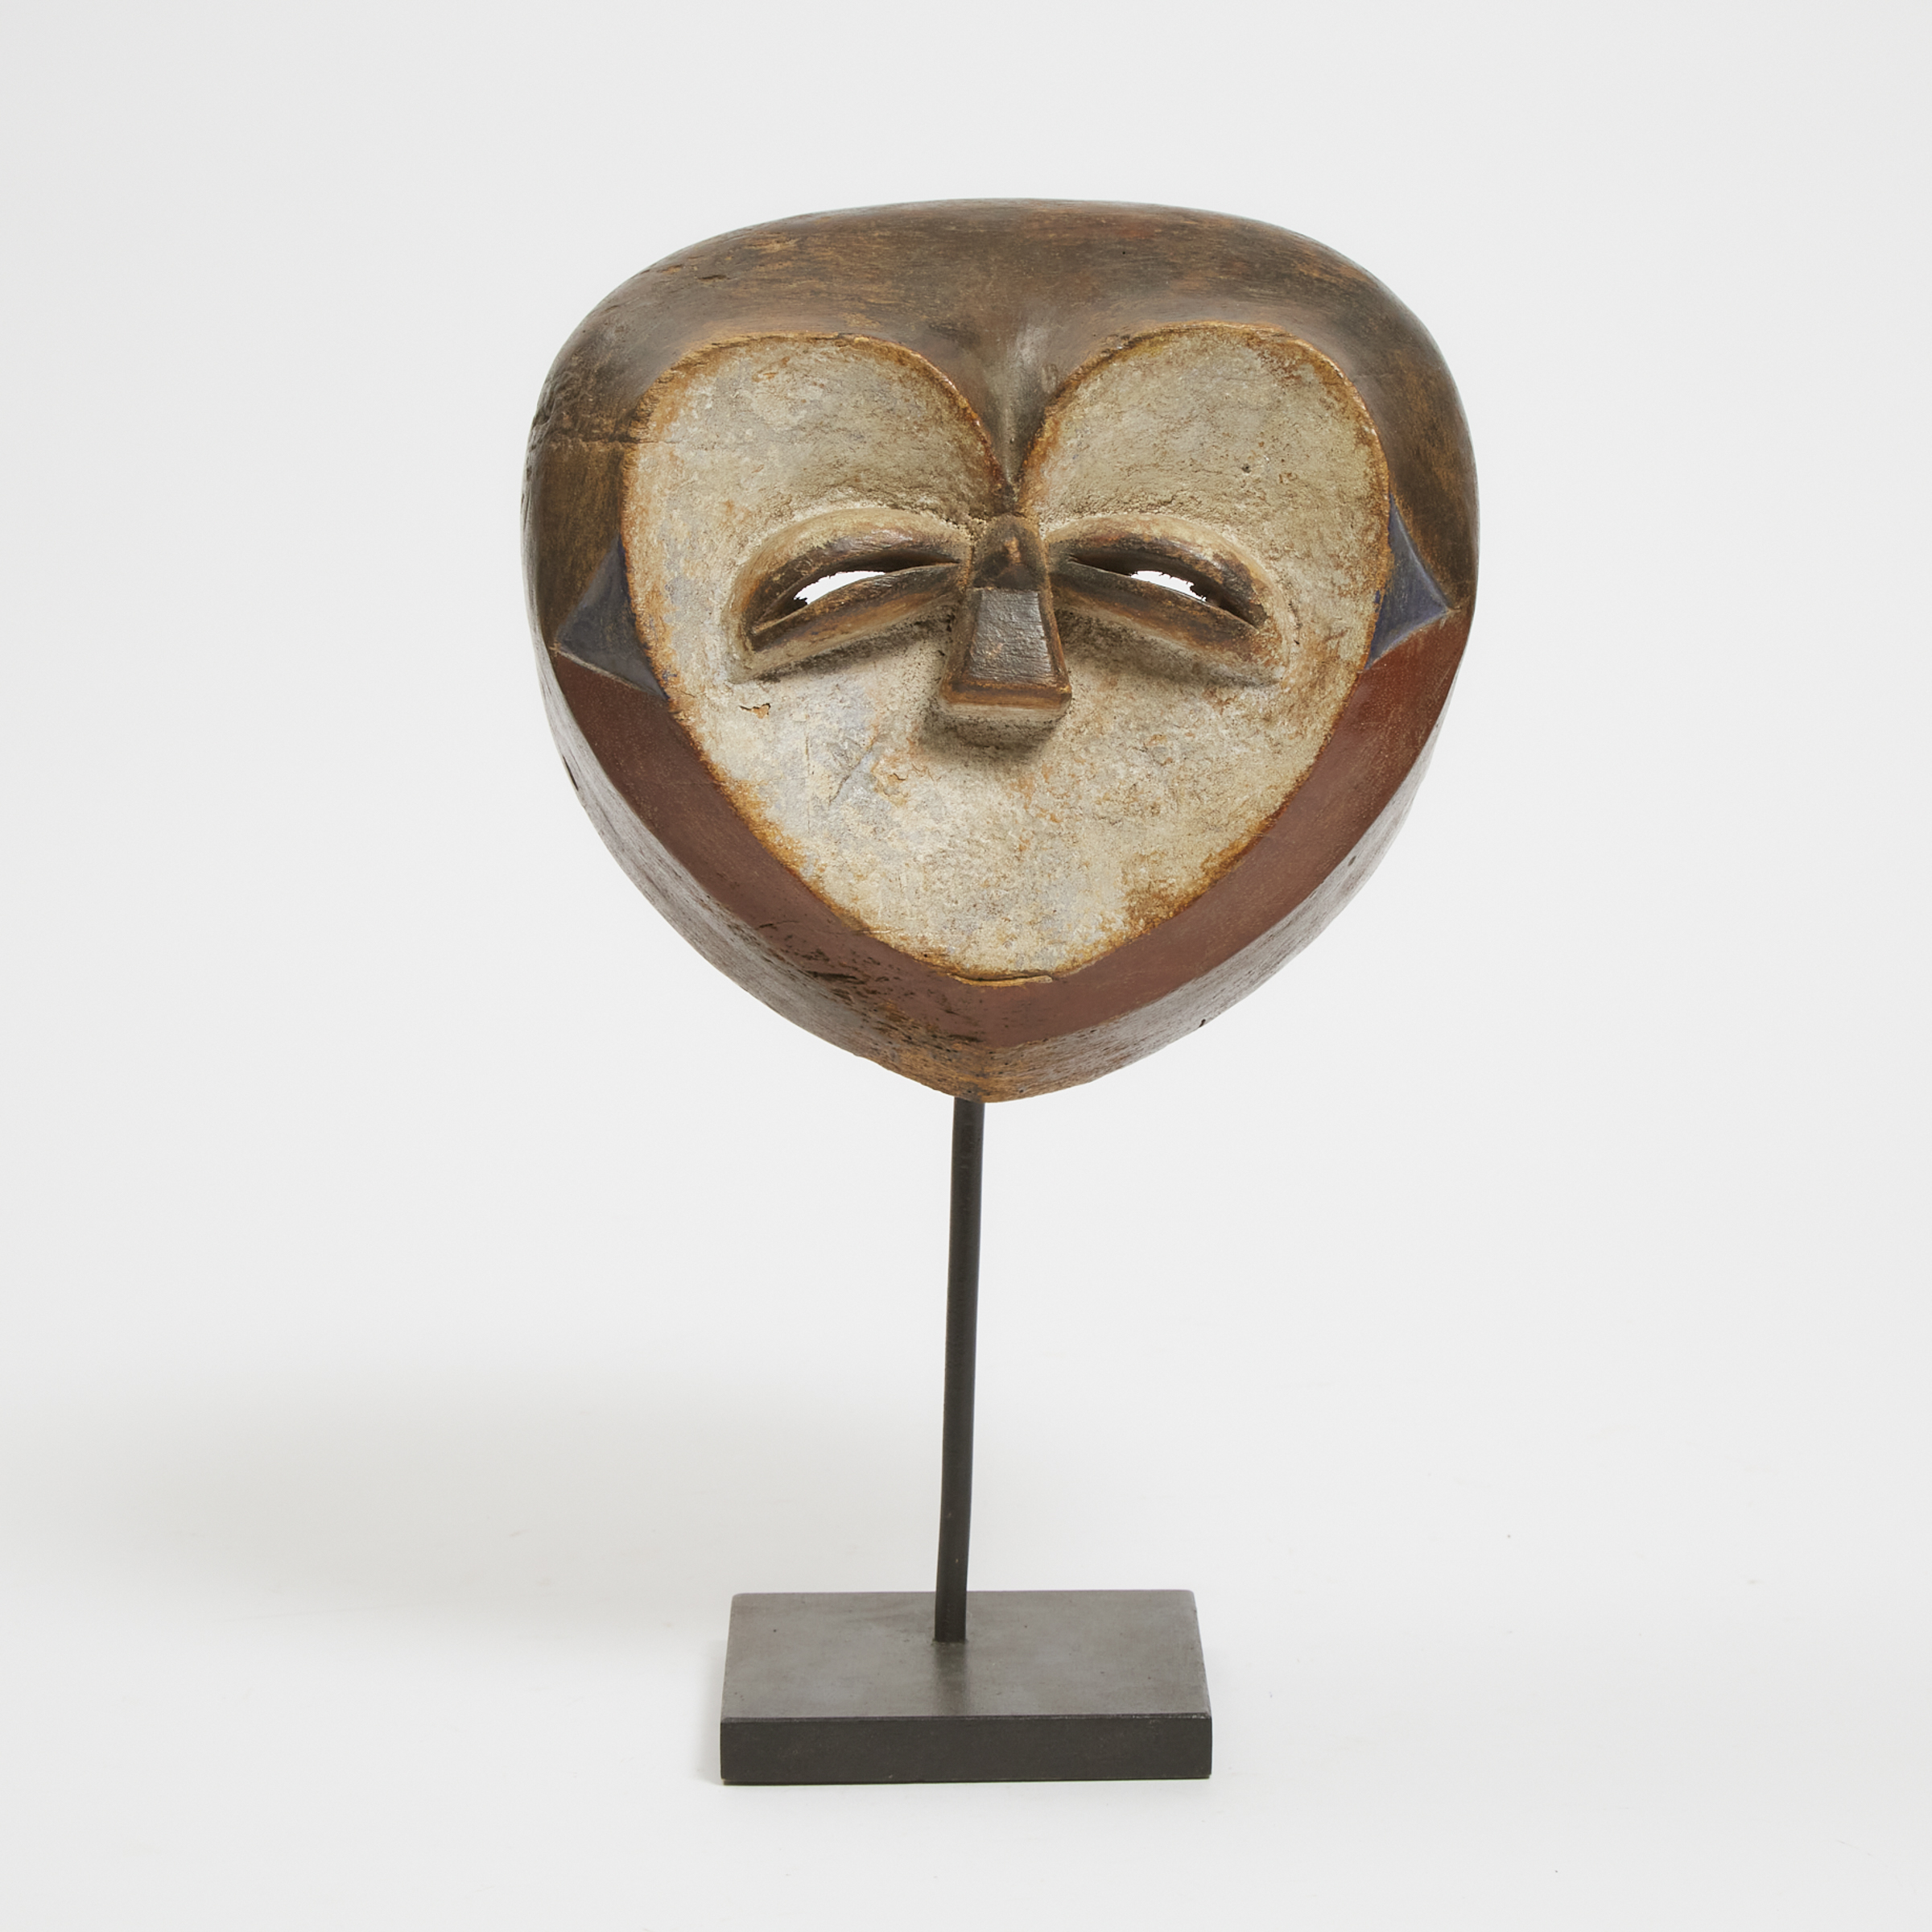 Kwele Mask, Gabon, West Africa,